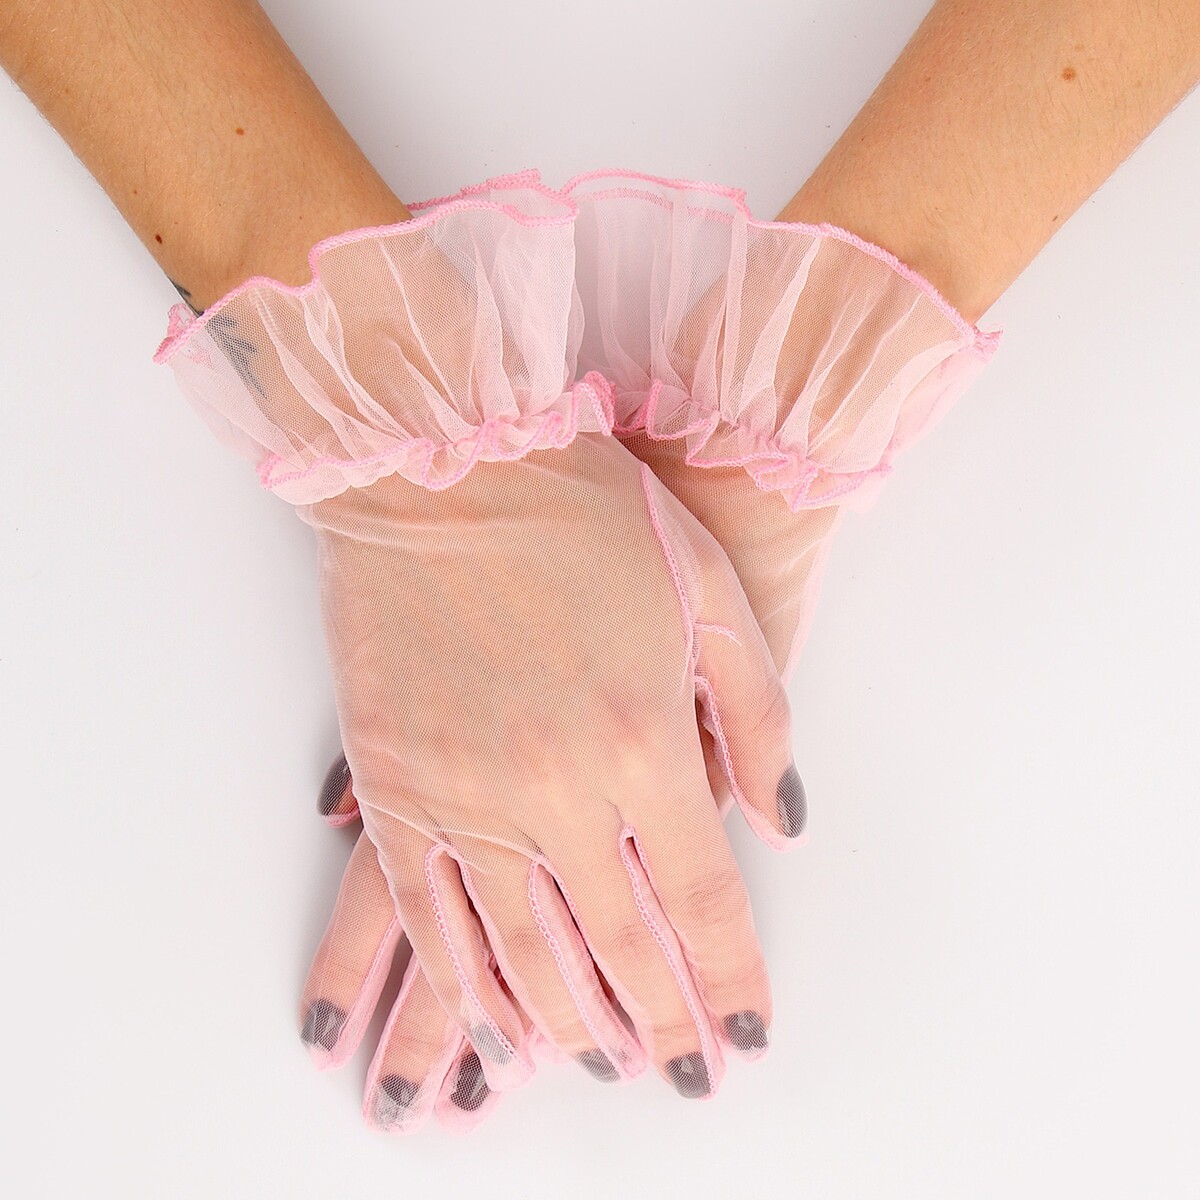 Карнавальный аксессуар - перчатки прозрачные с юбочкой, цвет розовый карнавальный костюм batik 22 21 жасмин сказочная розовый 116